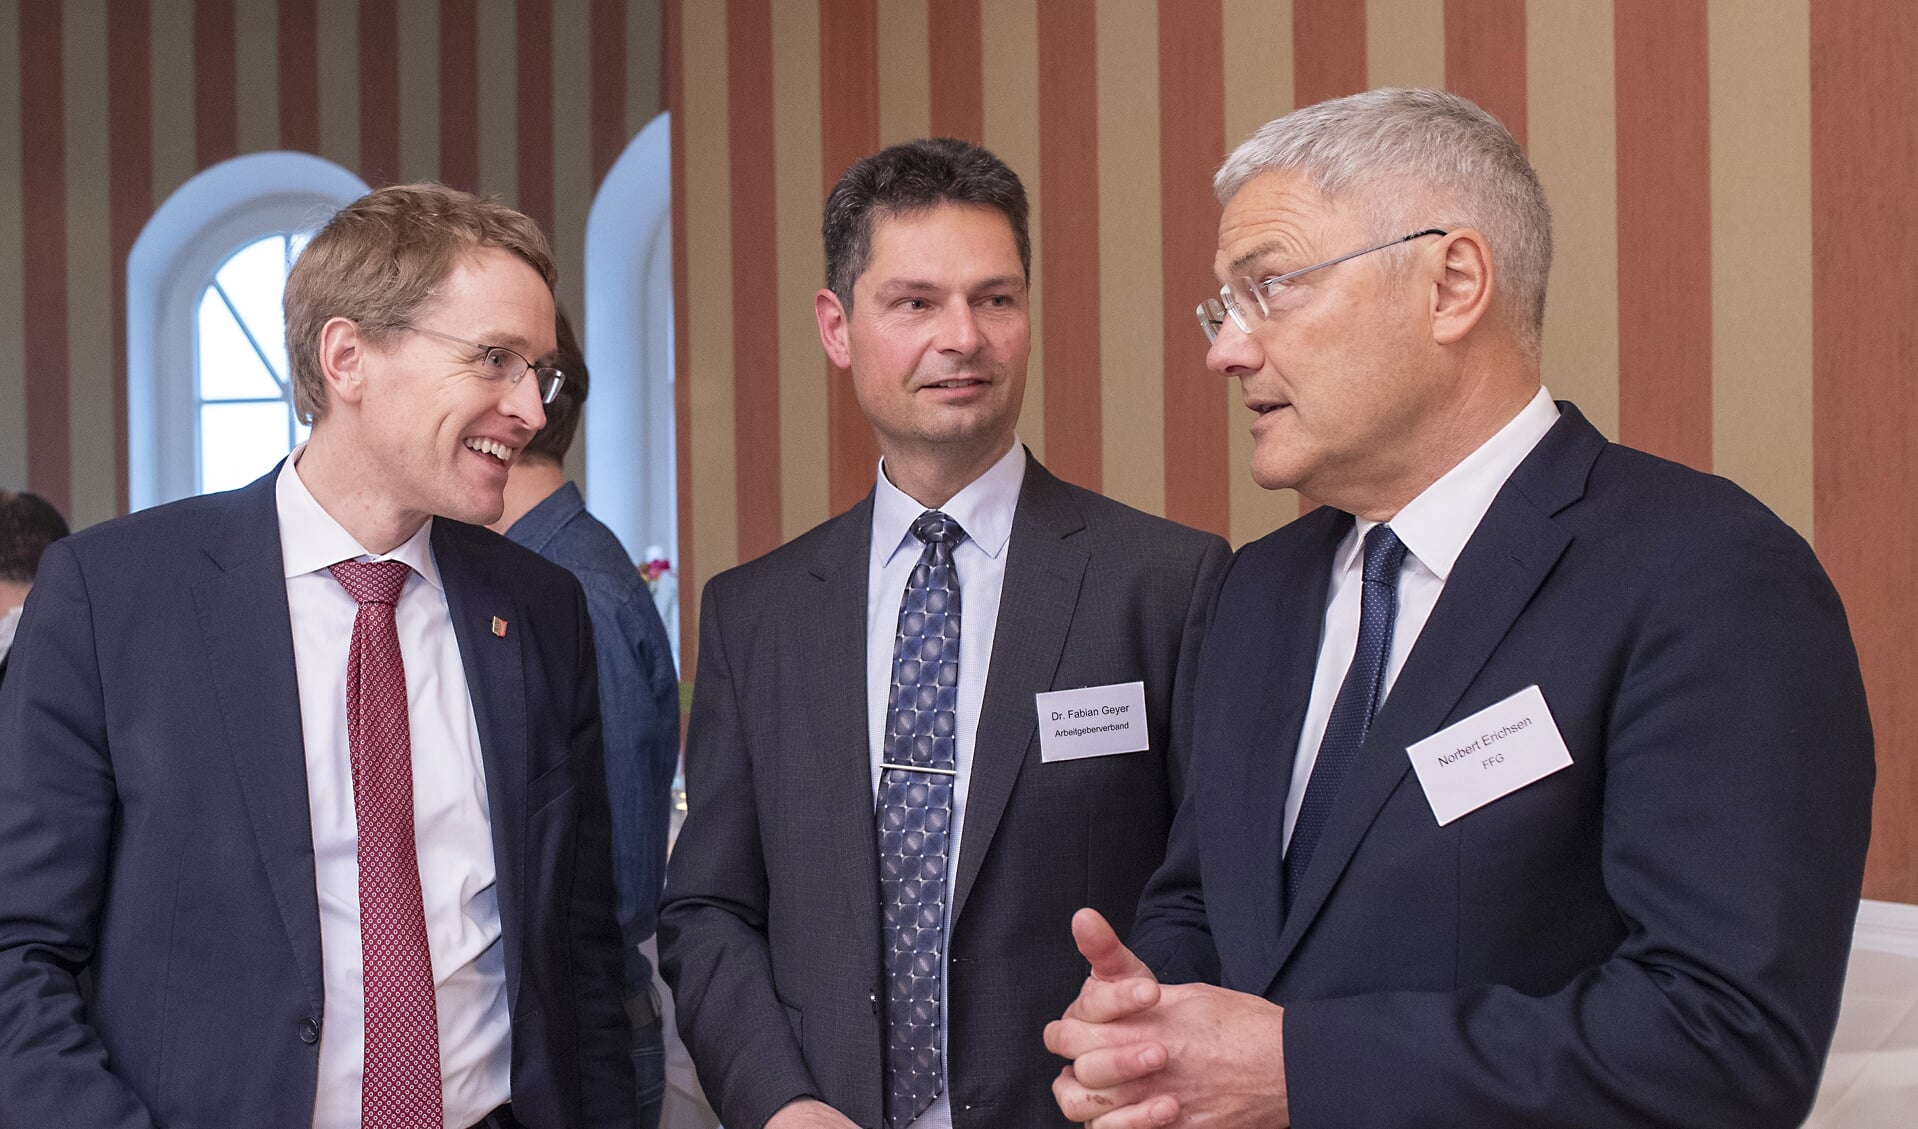 Daniel Günther (CDU), til venstre, til den årlige generalforsamling i den regionale arbejdsgiverforening sidste år. Midtfor er det direktør Fabian Geyer, der flankeres af formand Norbert Erichsen. Fabian Geyer er meget utilfreds med Flensborg-forvaltningens ageren i erhvervspolitikken.